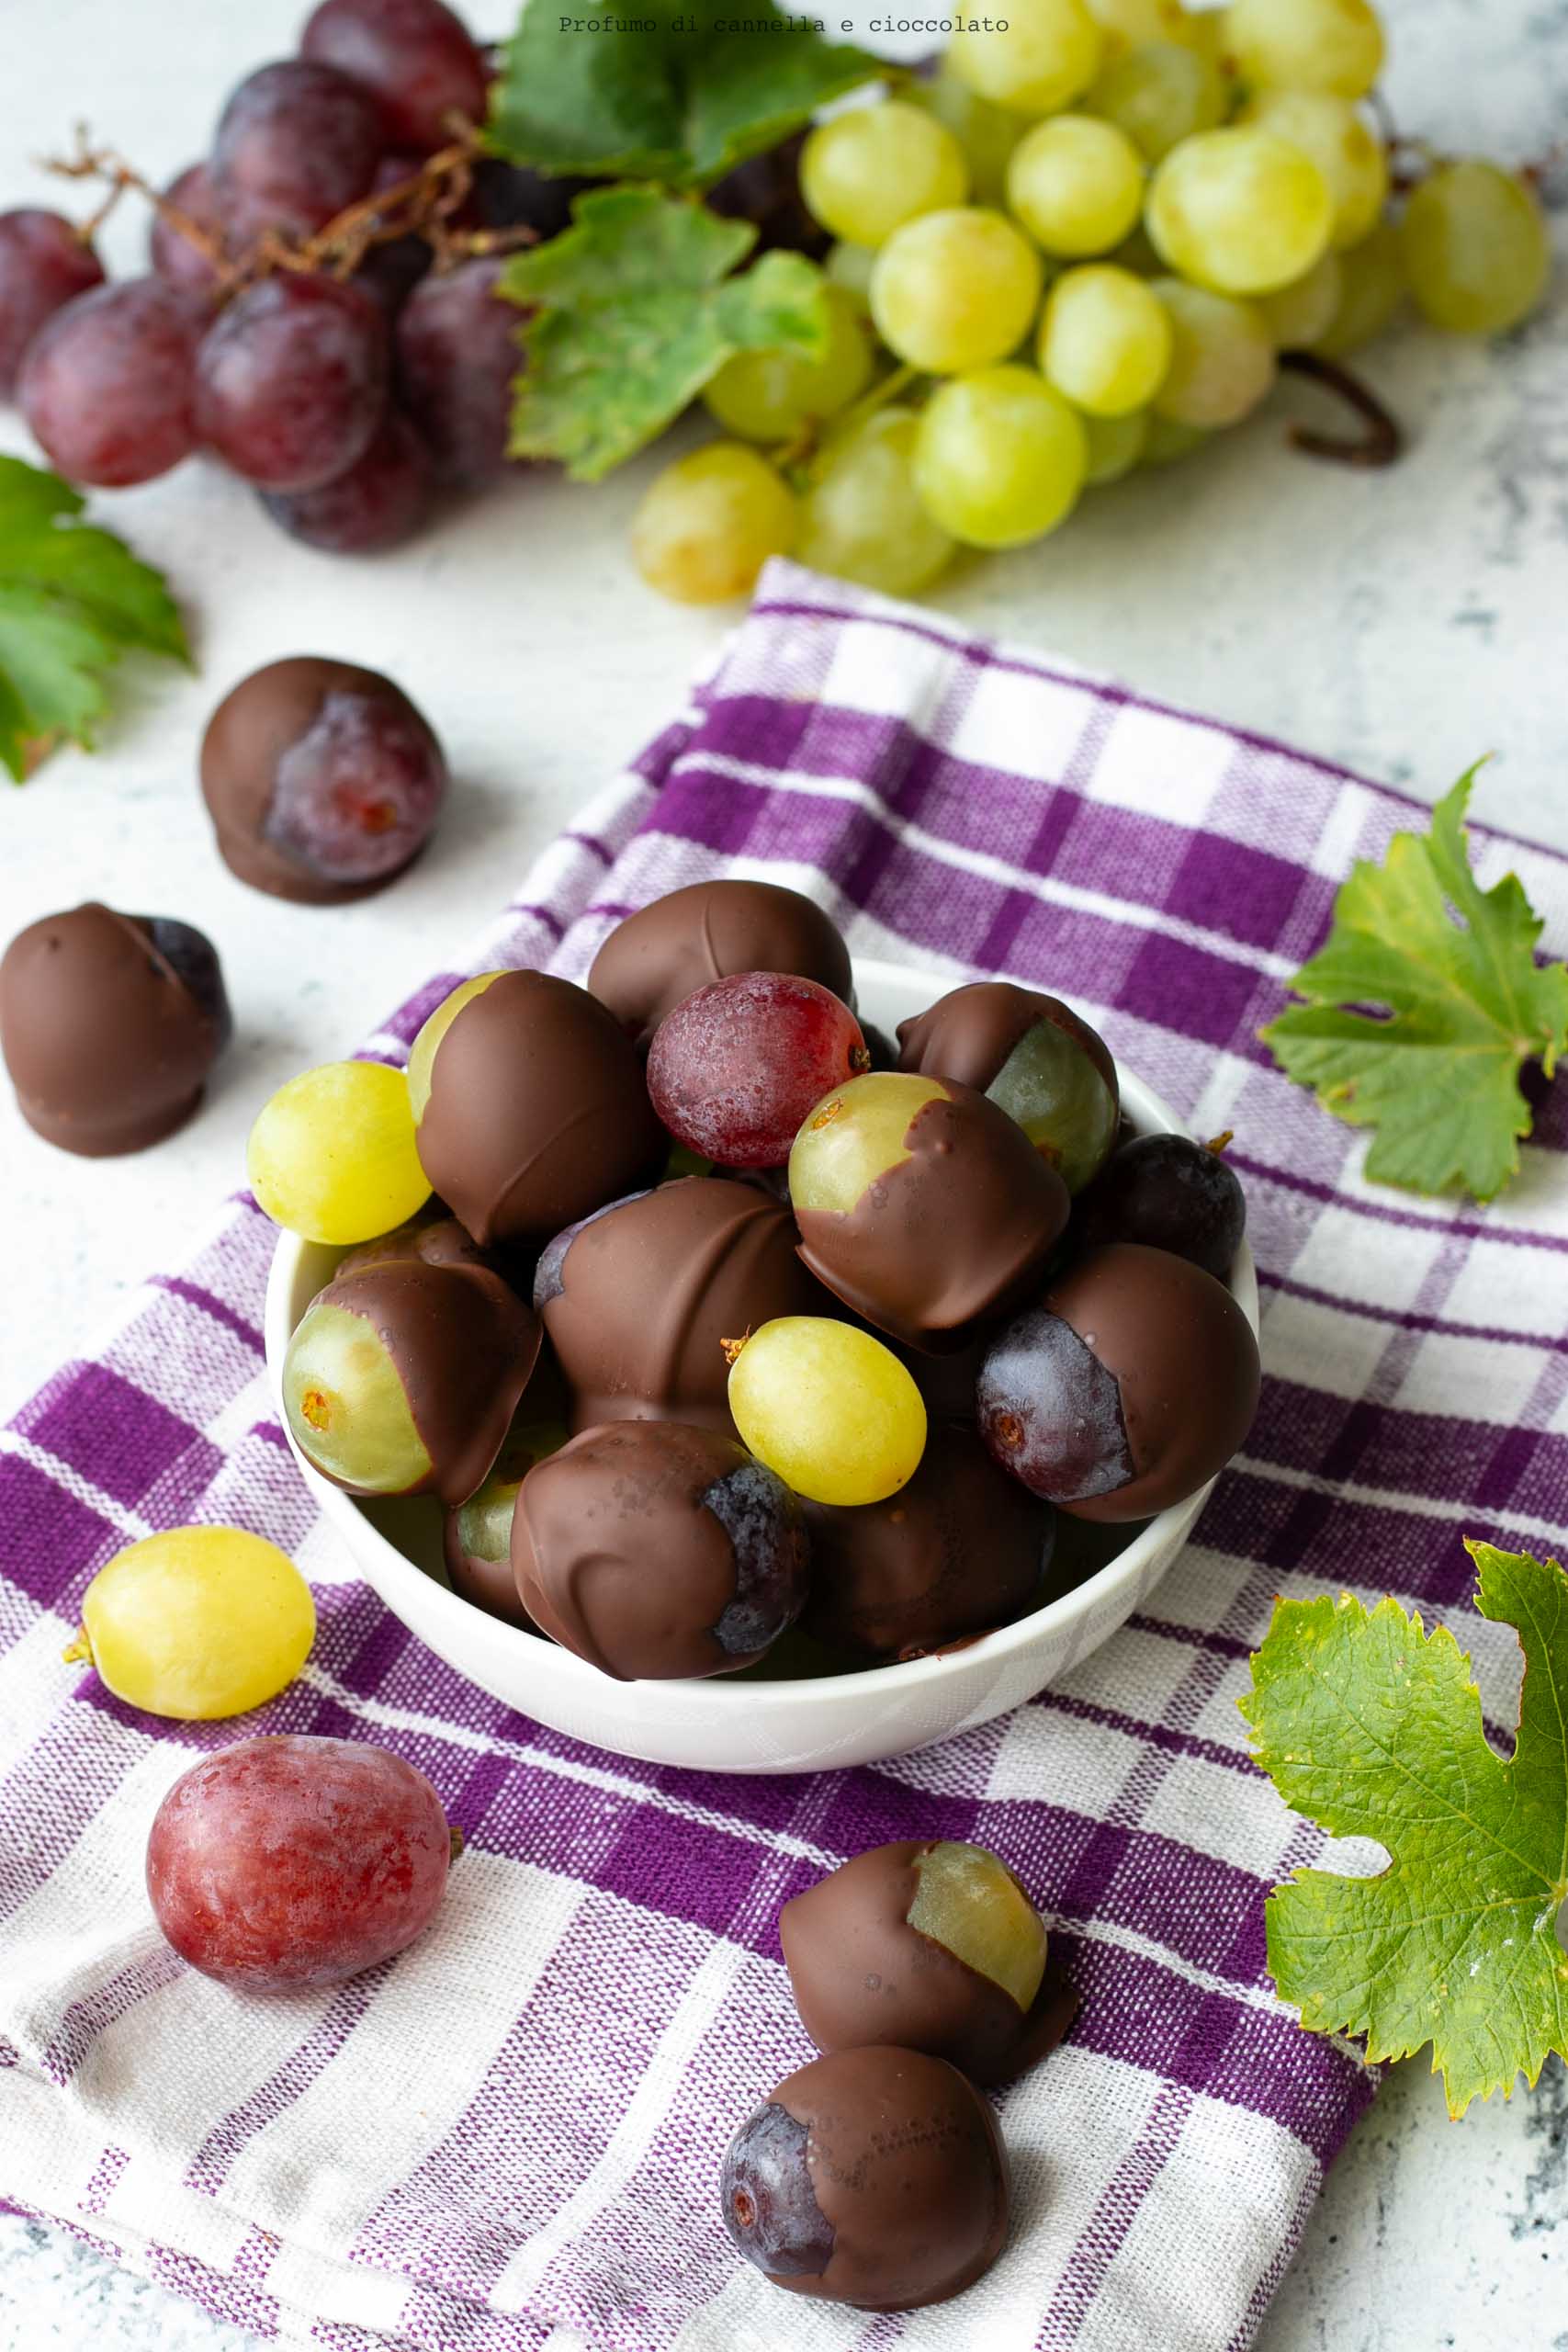 Chicchi d'uva al cioccolato